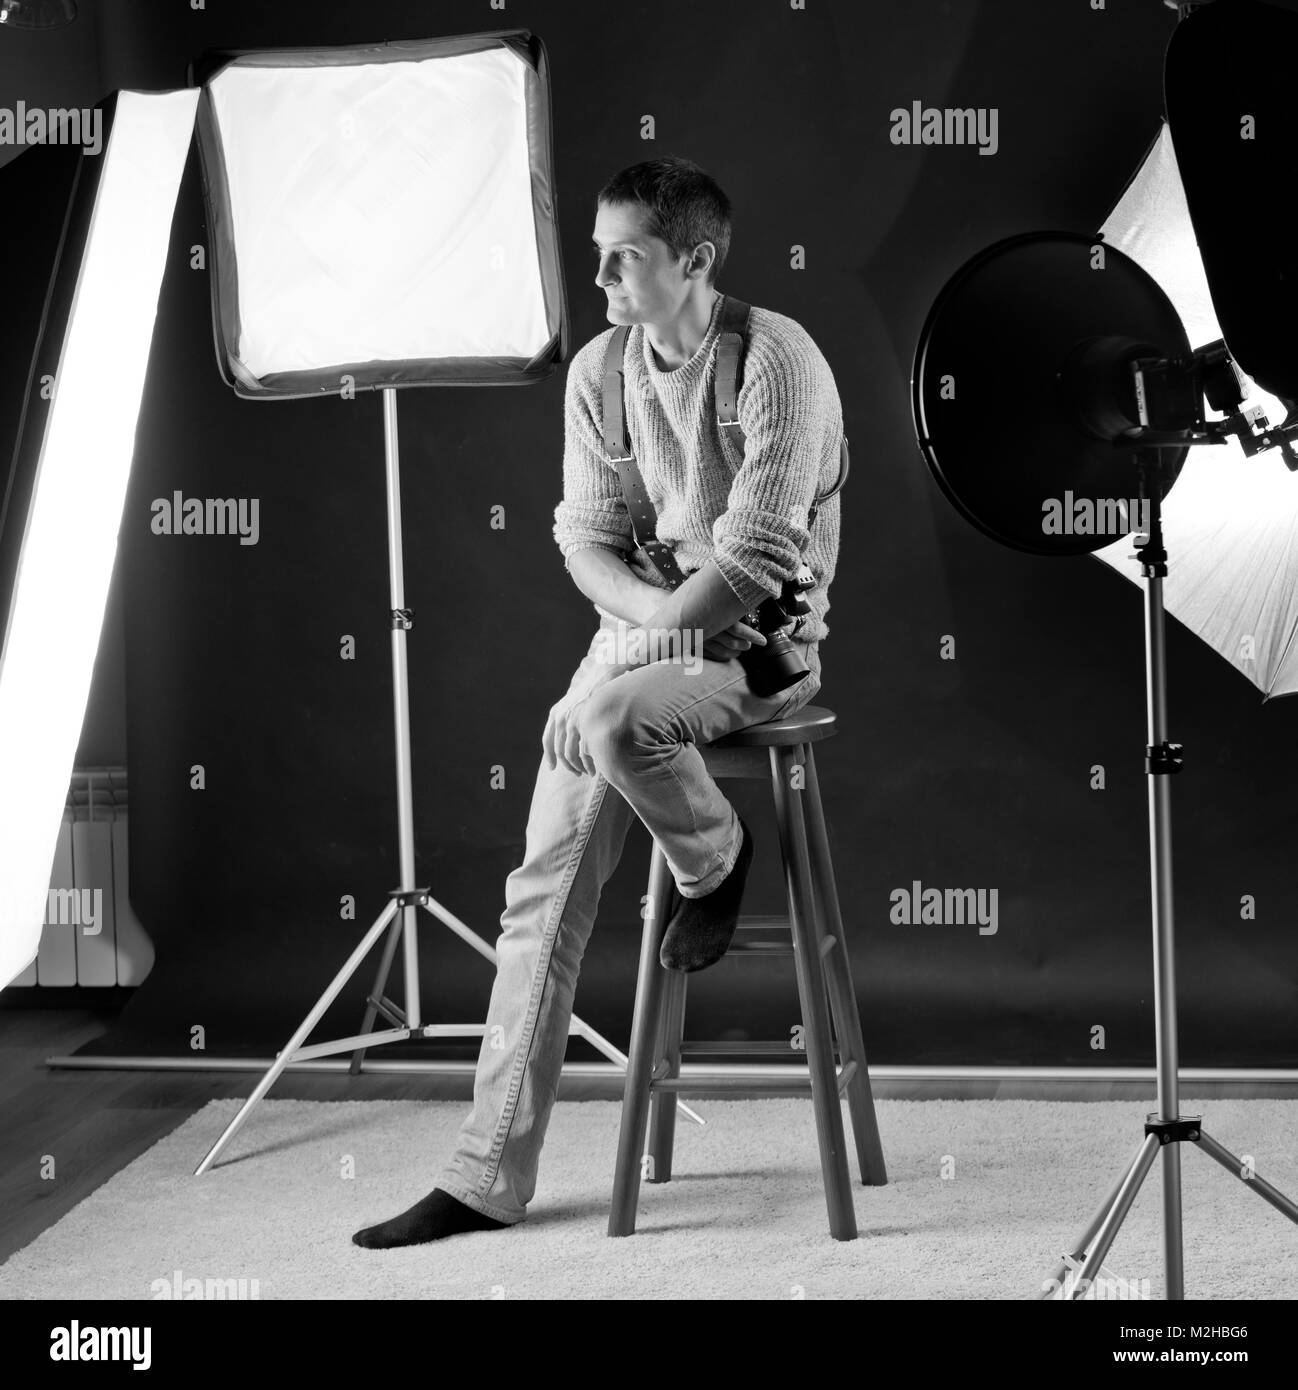 Fotograf im Studio mit seinem Licht Modifikatoren um und saß auf einem Bar Stuhl, schwarzen Hintergrund. Er wird von Softboxen, Beauty Dish, Regenschirm umgeben Stockfoto